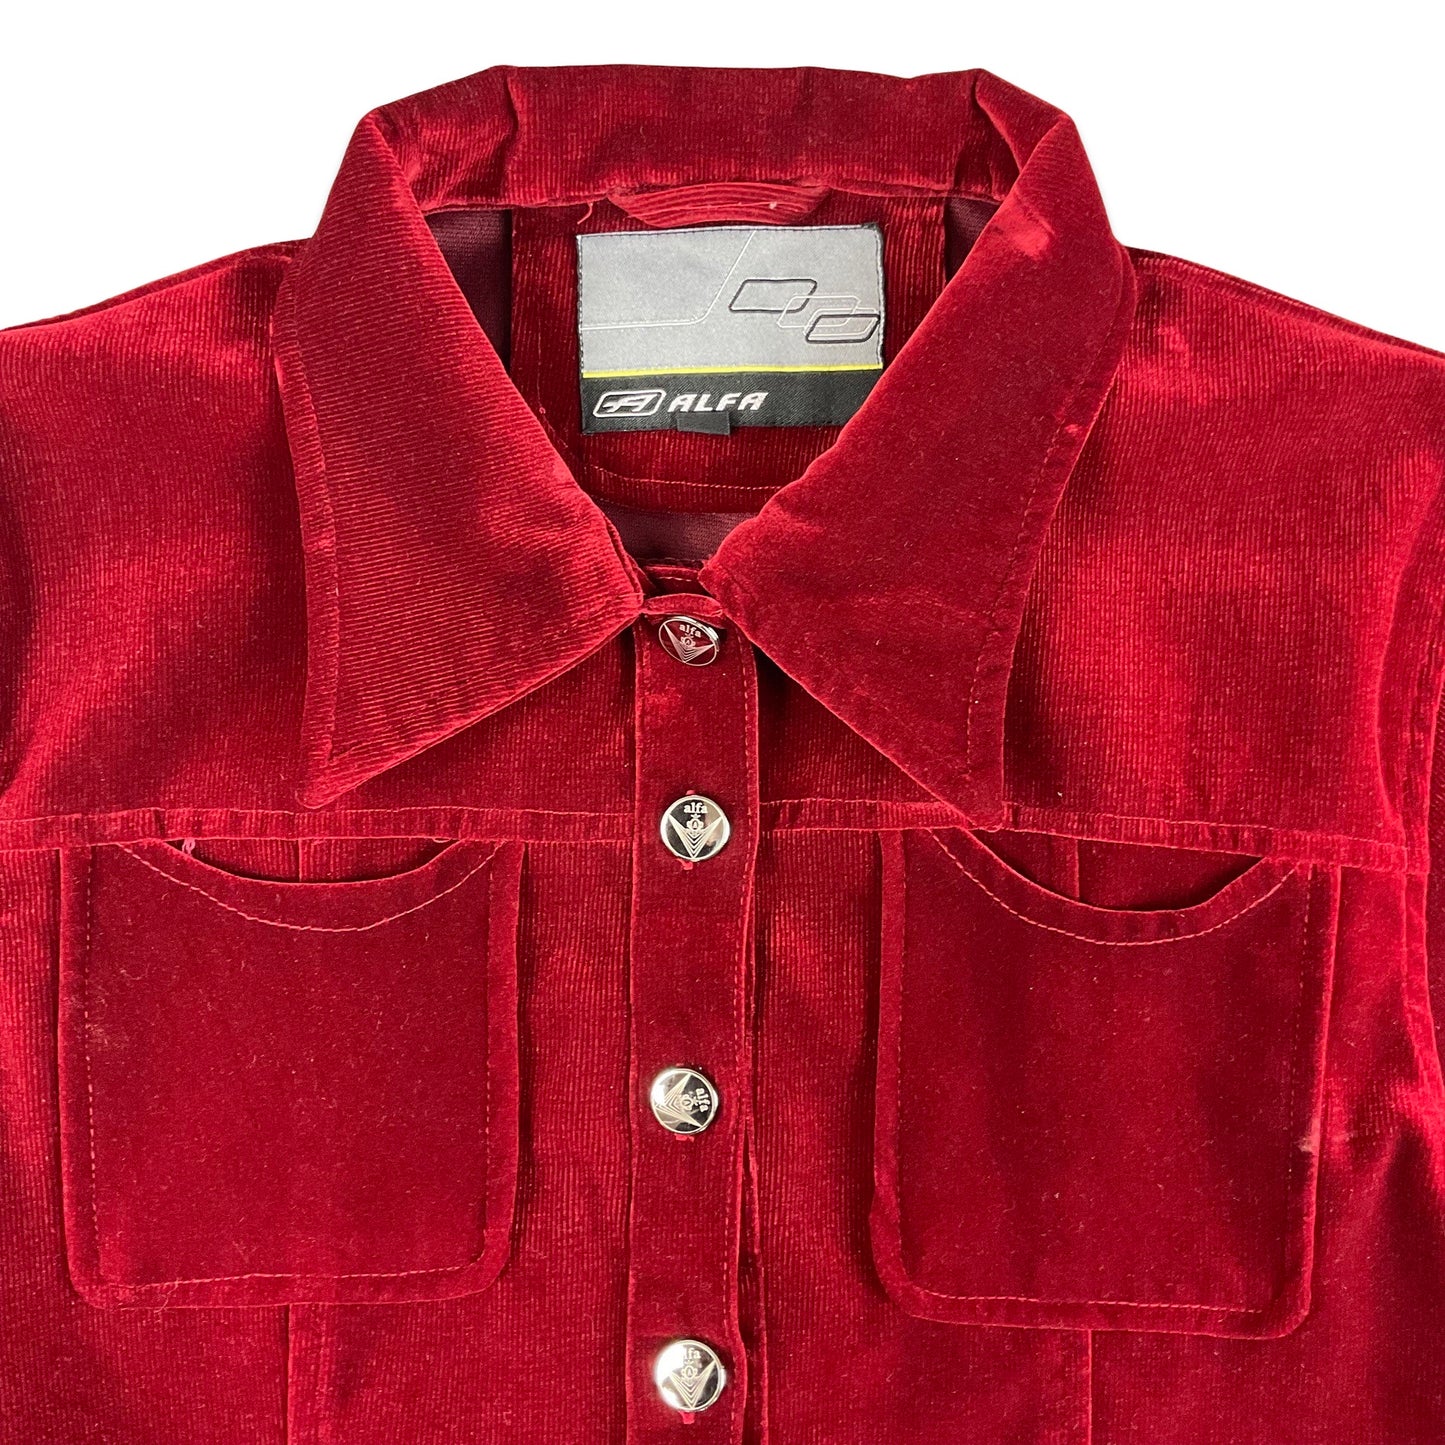 Vintage 90s Red Velvet Cord Bell Sleeve Shirt 12 14